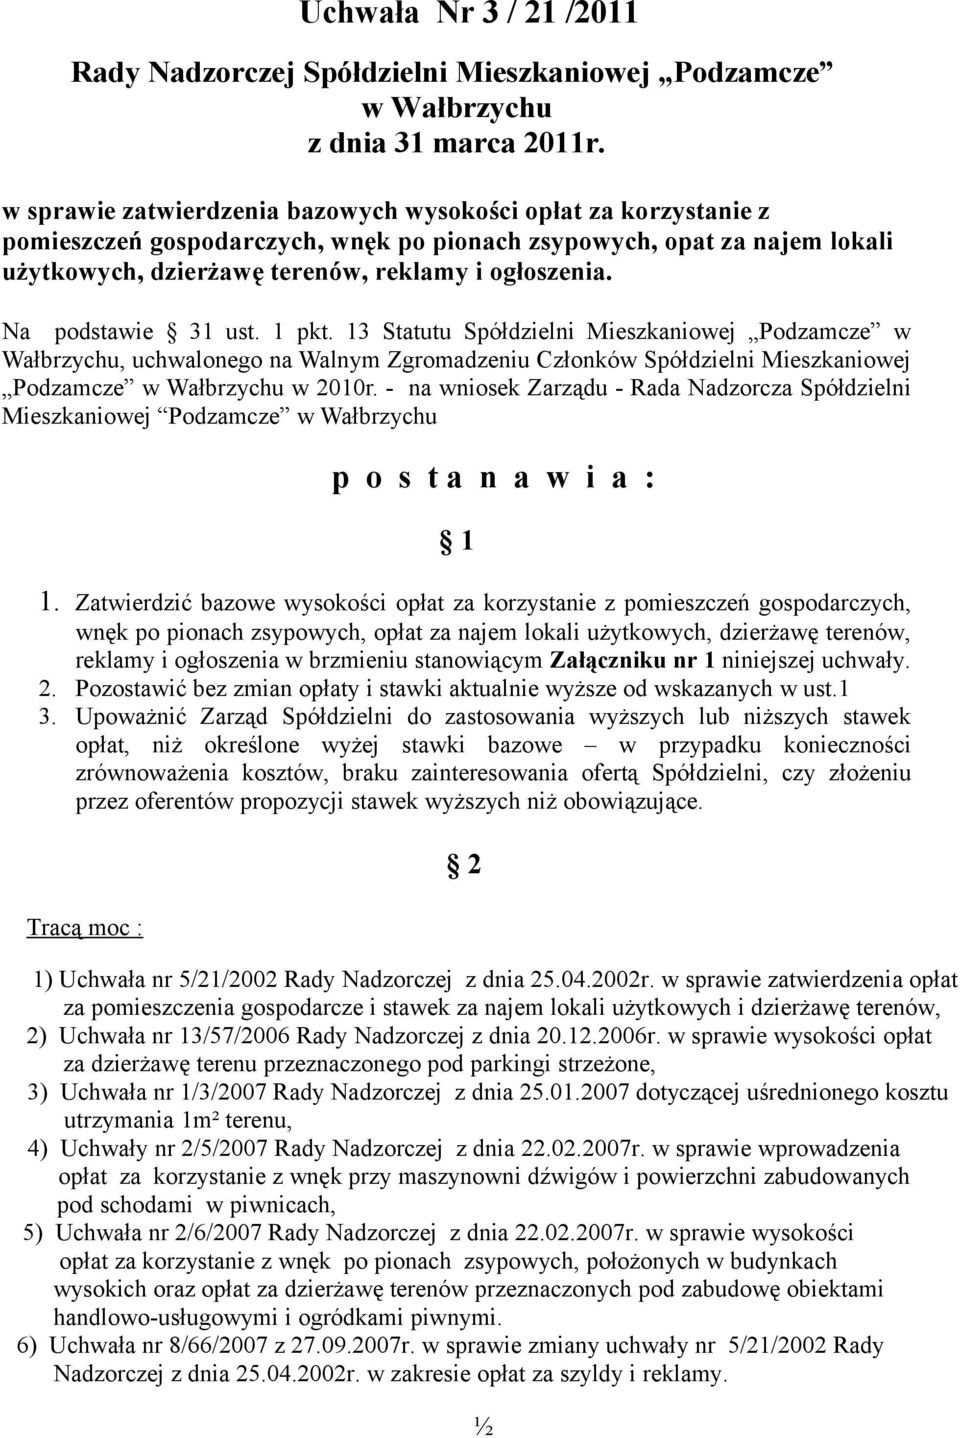 Na podstawie 31 ust. 1 pkt. 13 Statutu Spółdzielni Mieszkaniowej Podzamcze w Wałbrzychu, uchwalonego na Walnym Zgromadzeniu Członków Spółdzielni Mieszkaniowej Podzamcze w Wałbrzychu w 2010r.